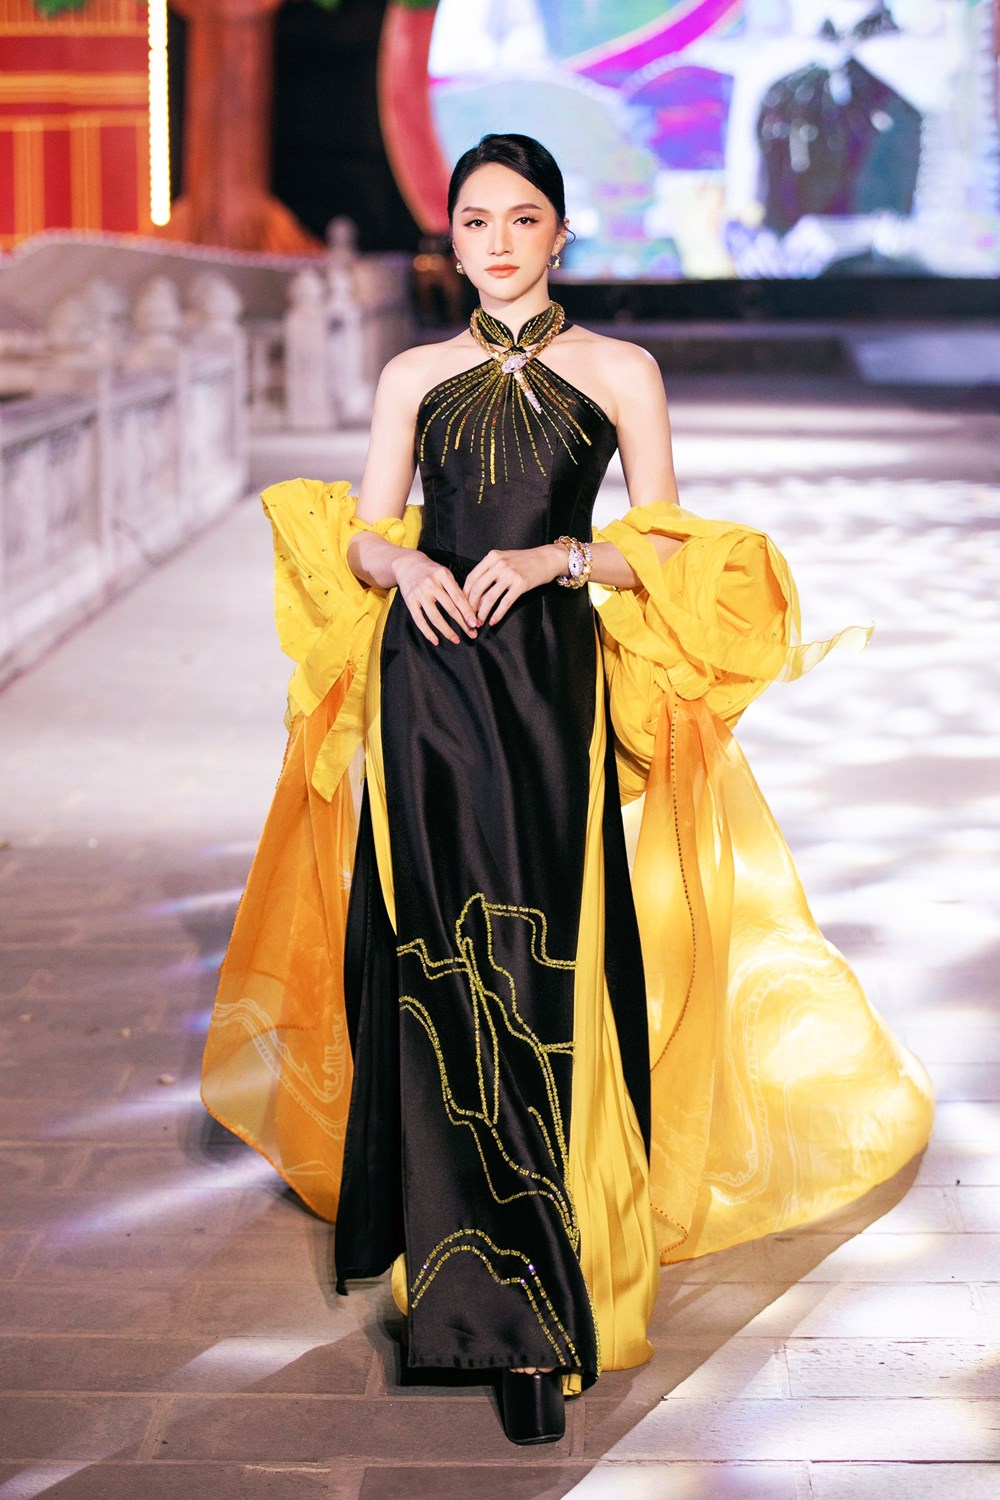 Hoa hậu nhí Hồng Lam ấn tượng với trang phục gắn rồng vàng 3D - ảnh 3